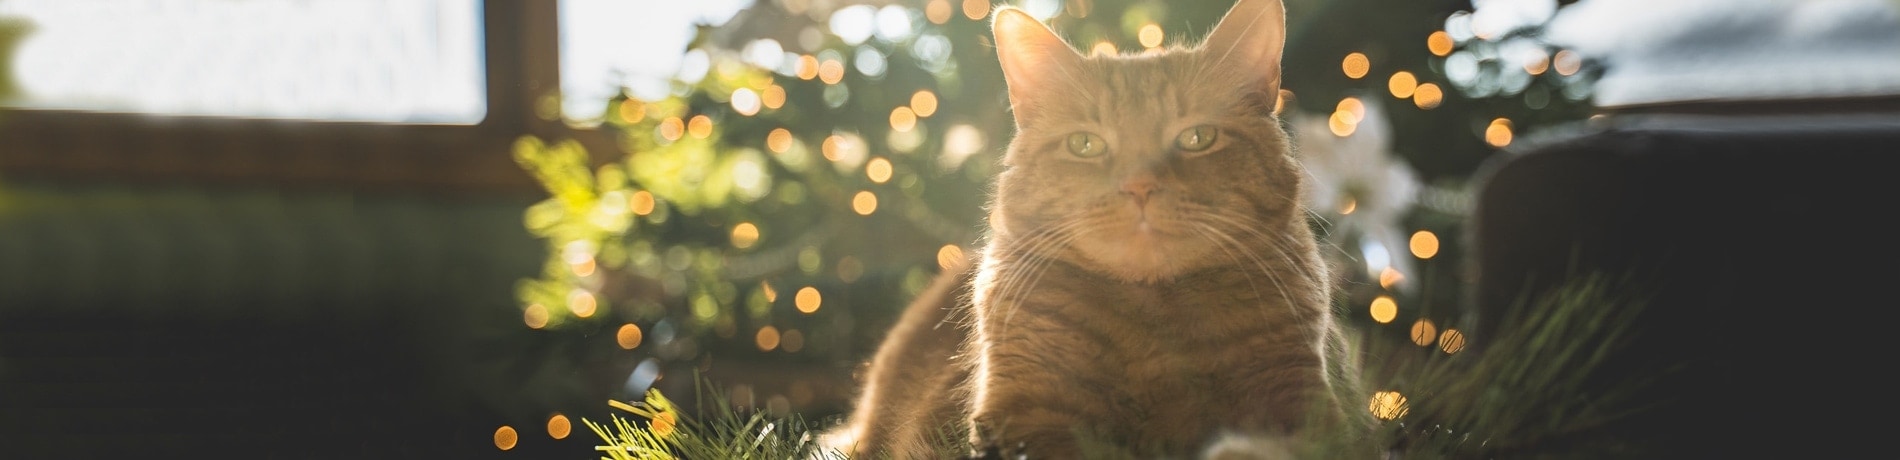 Kat eet van kerstboom, wat moet ik doen?